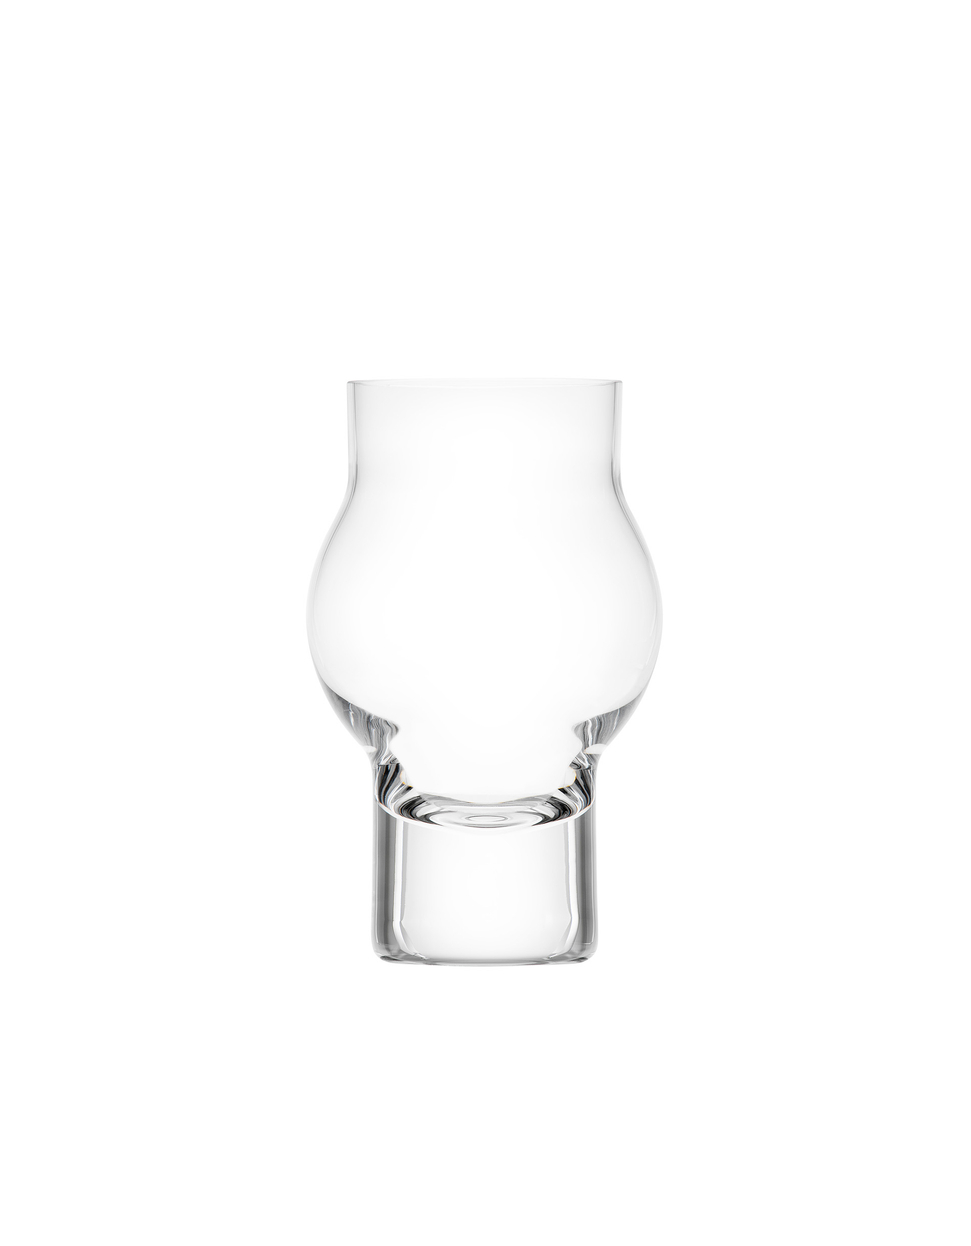 Geo white wine glass, 310 ml